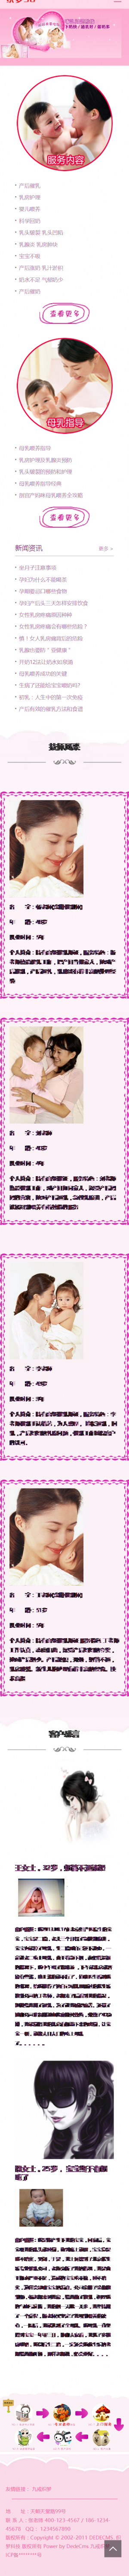 响应式粉红色母婴催乳类网站织梦模板(自适应设备)手机端演示